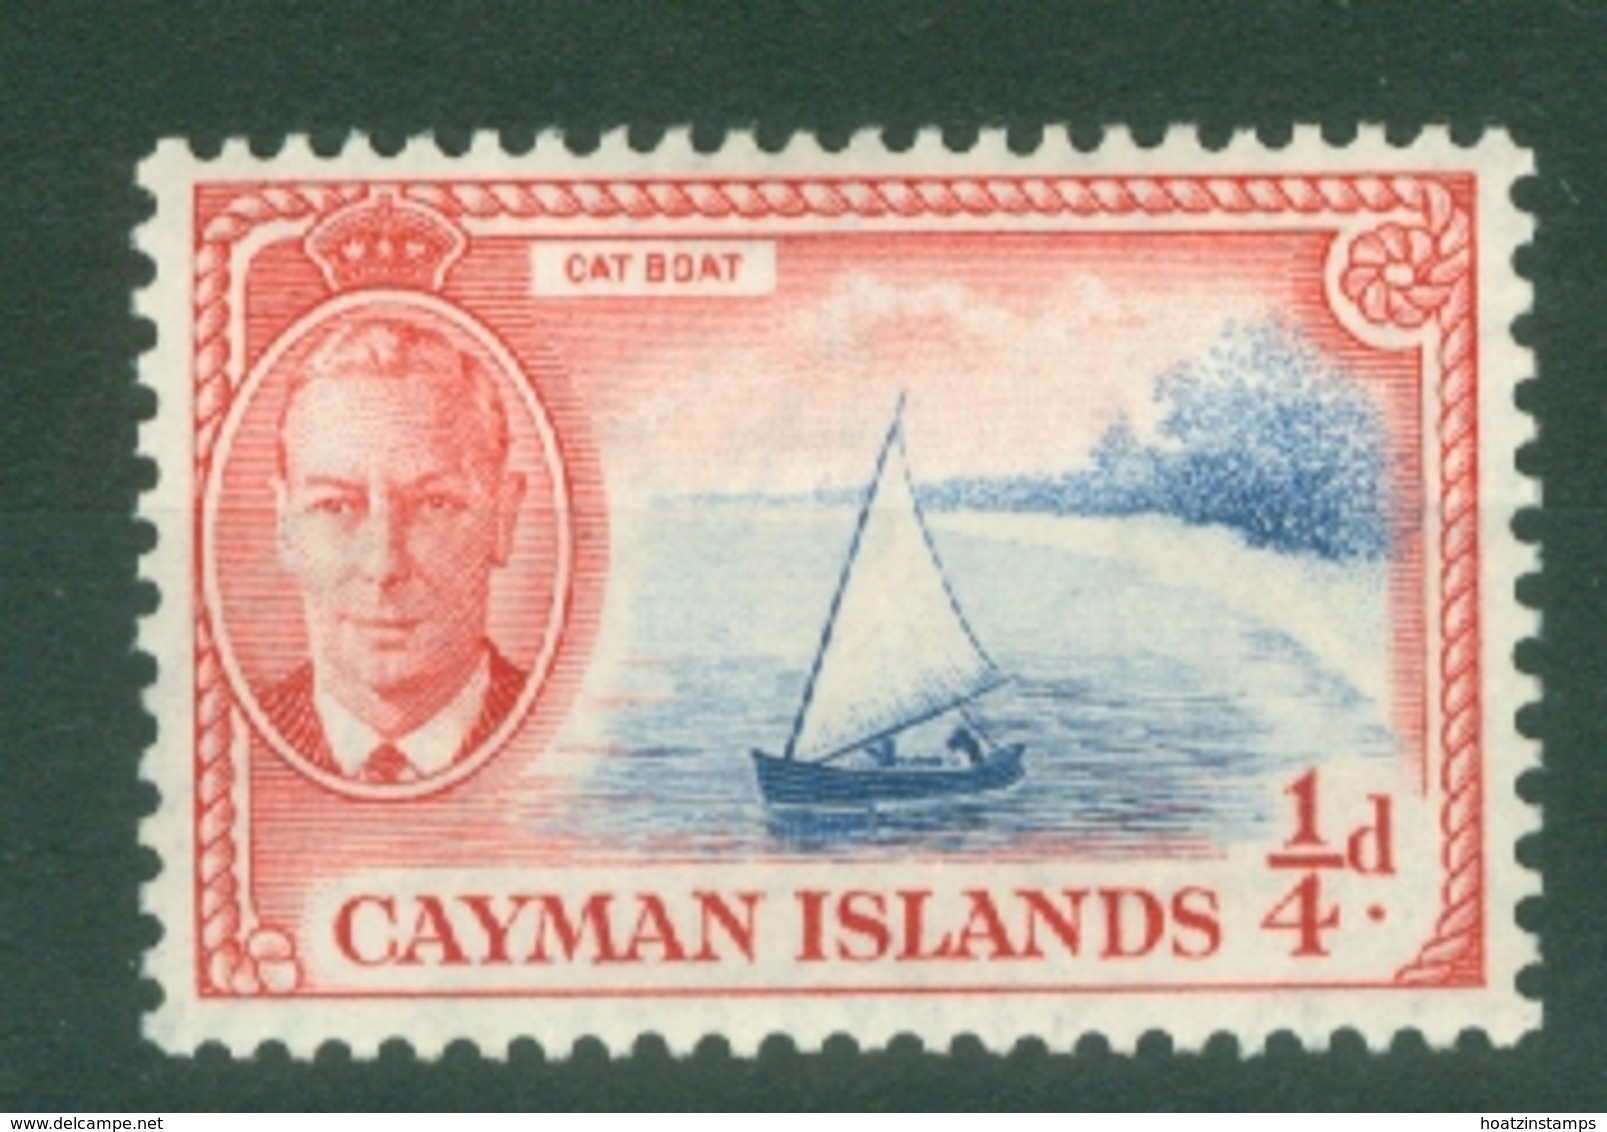 Cayman Islands: 1950   KGVI   SG135   ¼d   MNH - Cayman Islands